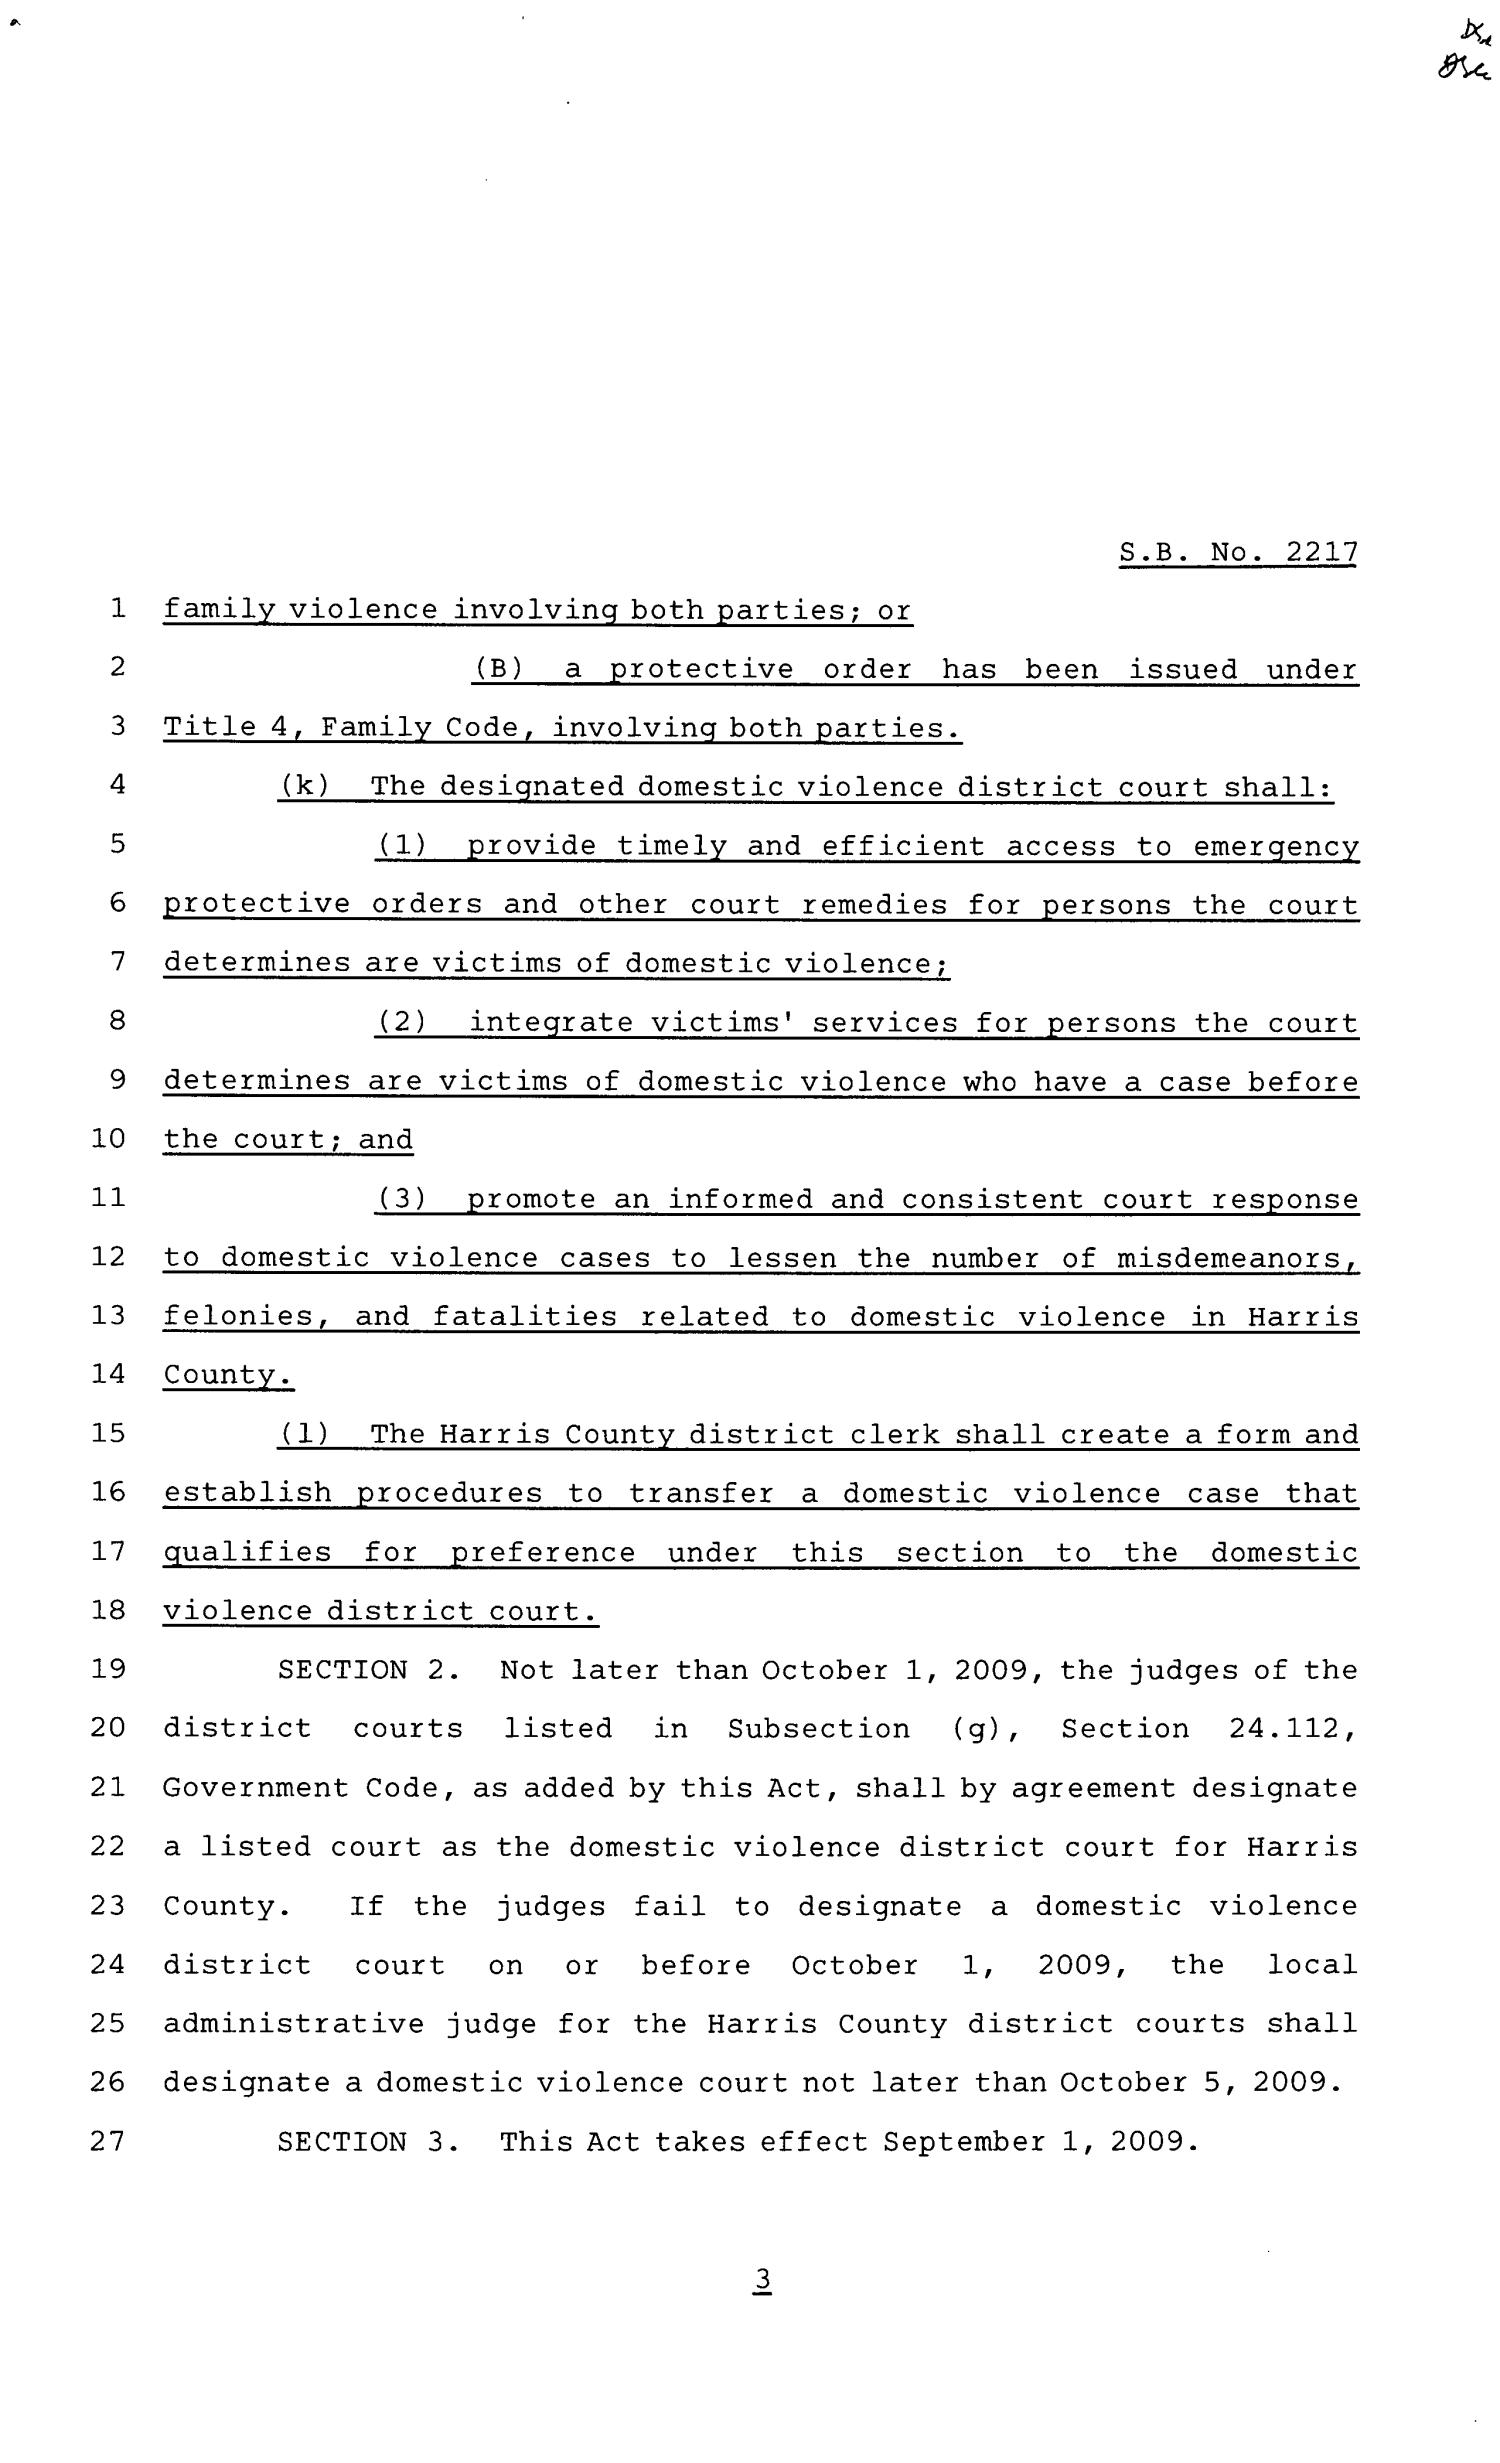 81st Texas Legislature, Senate Bill 2217, Chapter 572
                                                
                                                    [Sequence #]: 3 of 4
                                                